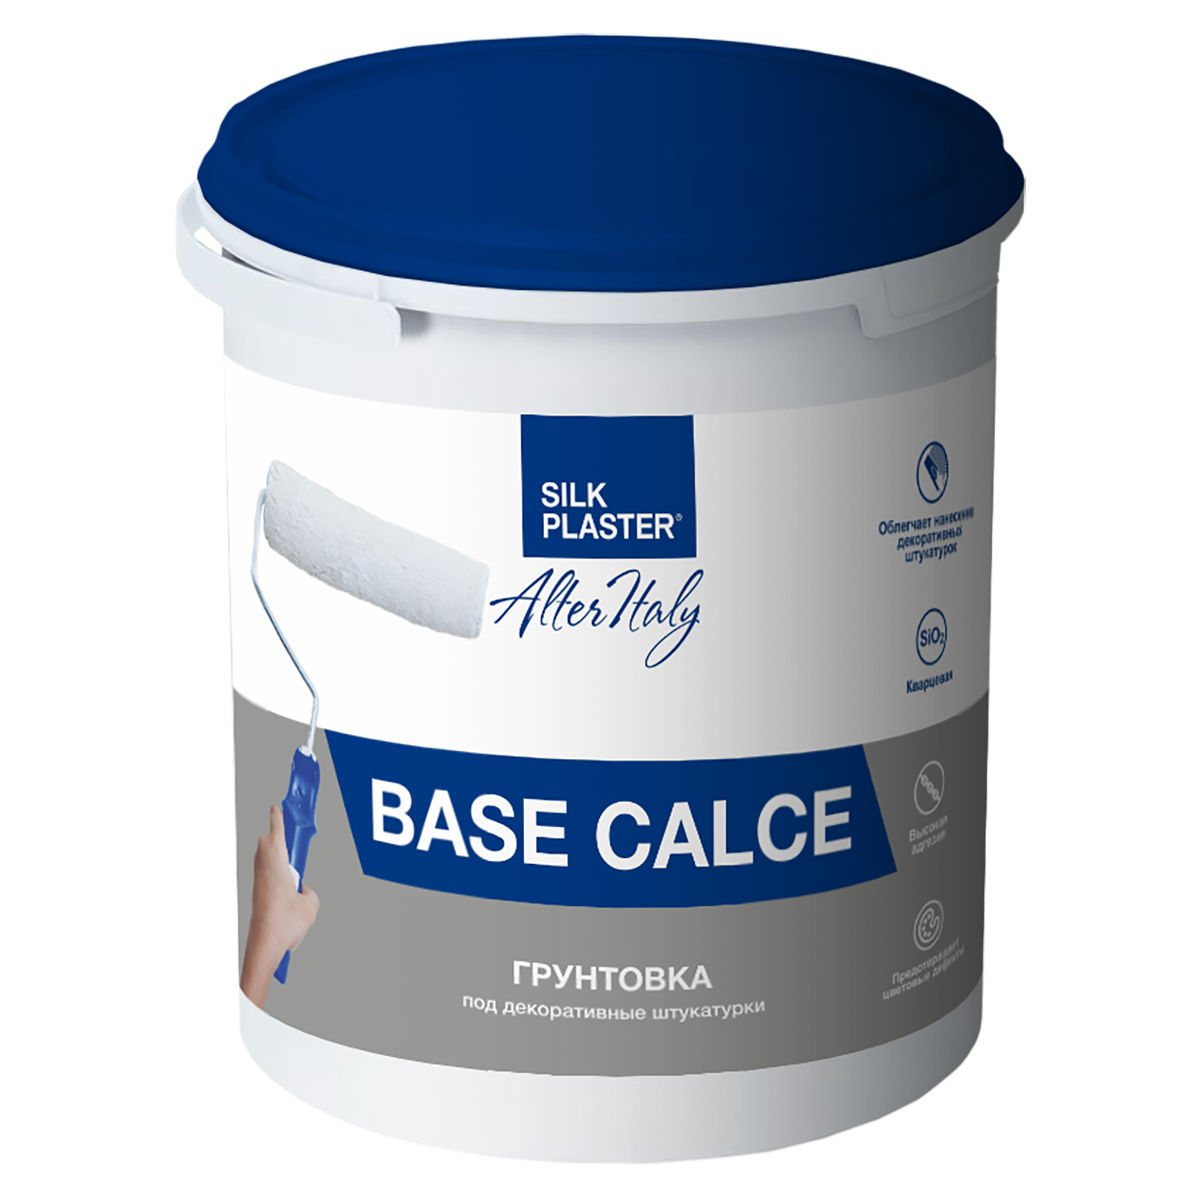 Инструкция по использованию грунтовки   AlterItaly Base Calce